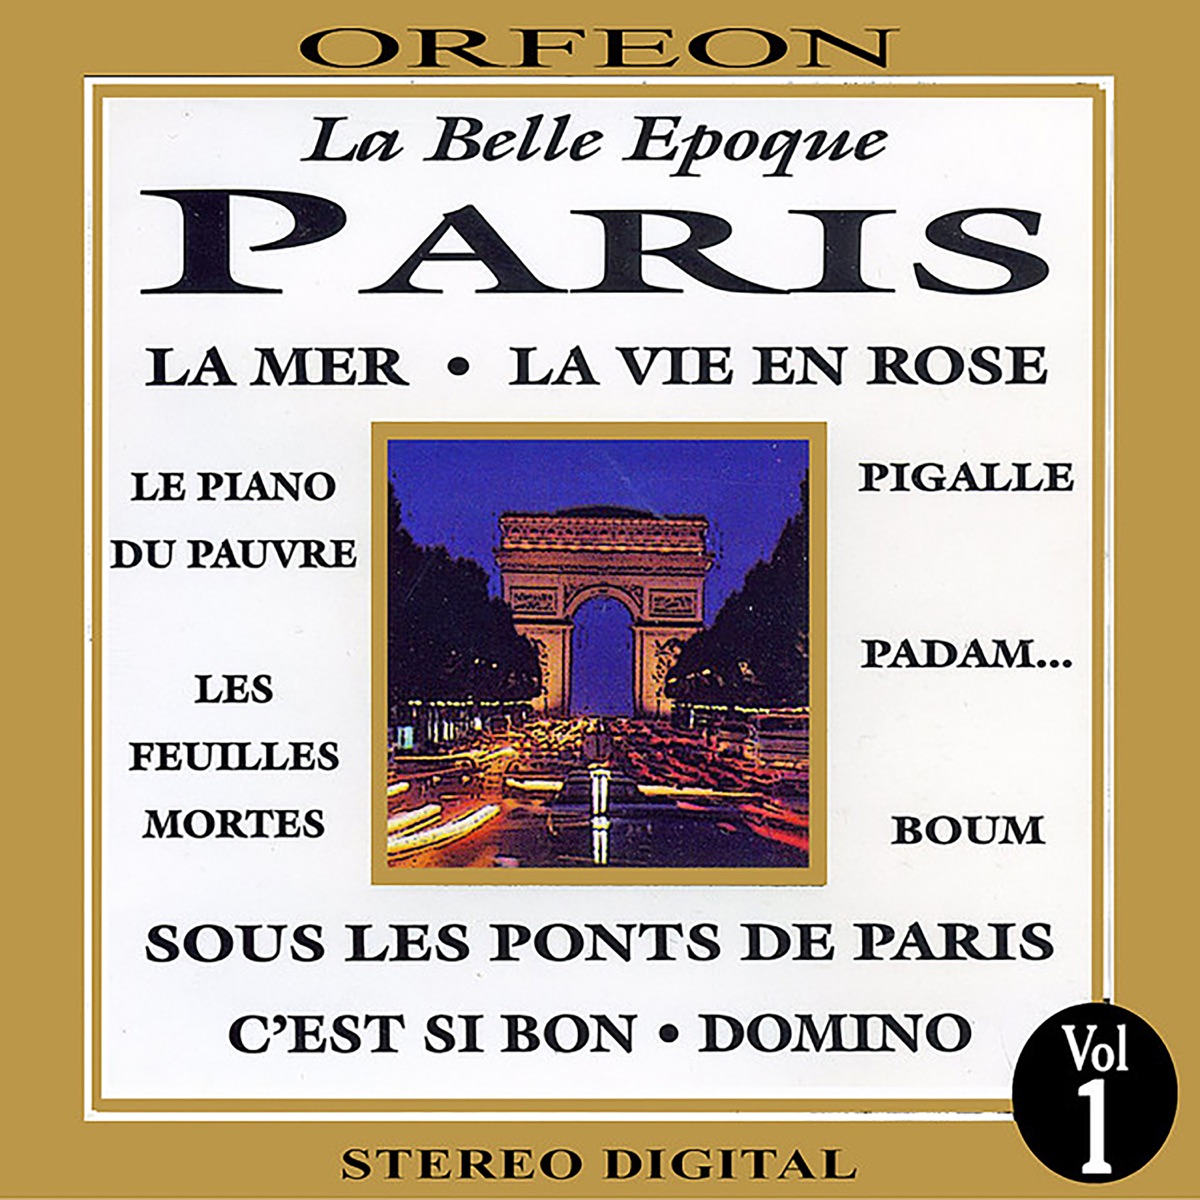 Apple Music 上Andre Toffel的专辑《La Belle Epoque Paris》